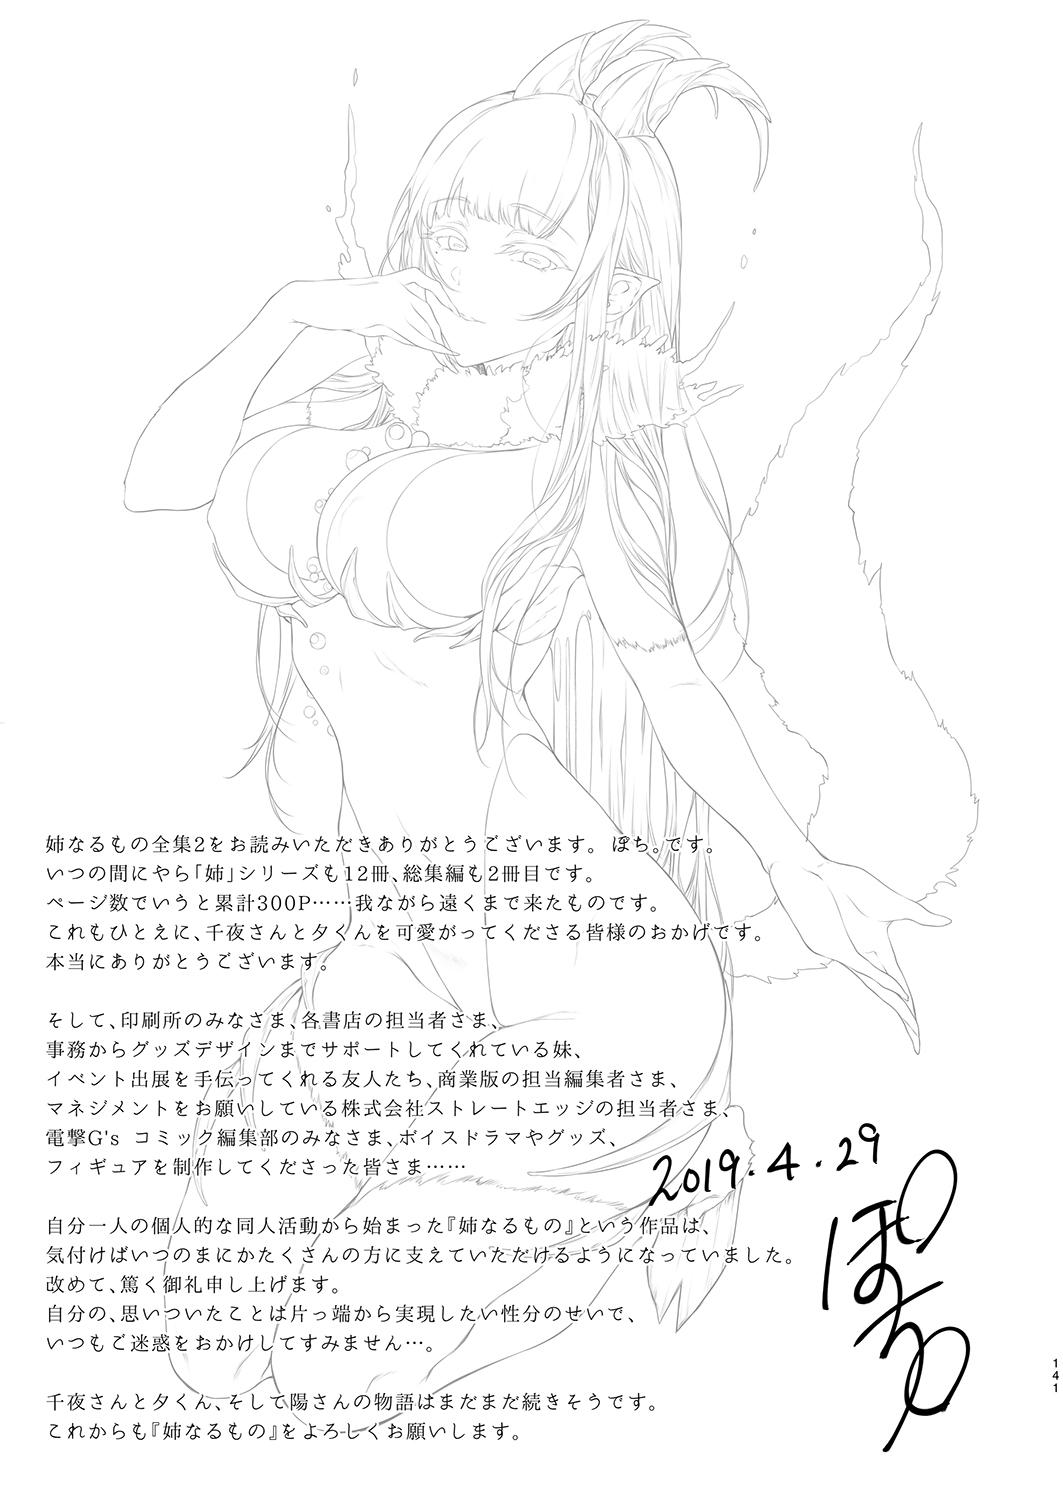 Boquete Ane Naru Mono Zenshuu 2 - Ane naru mono Cosplay - Page 141